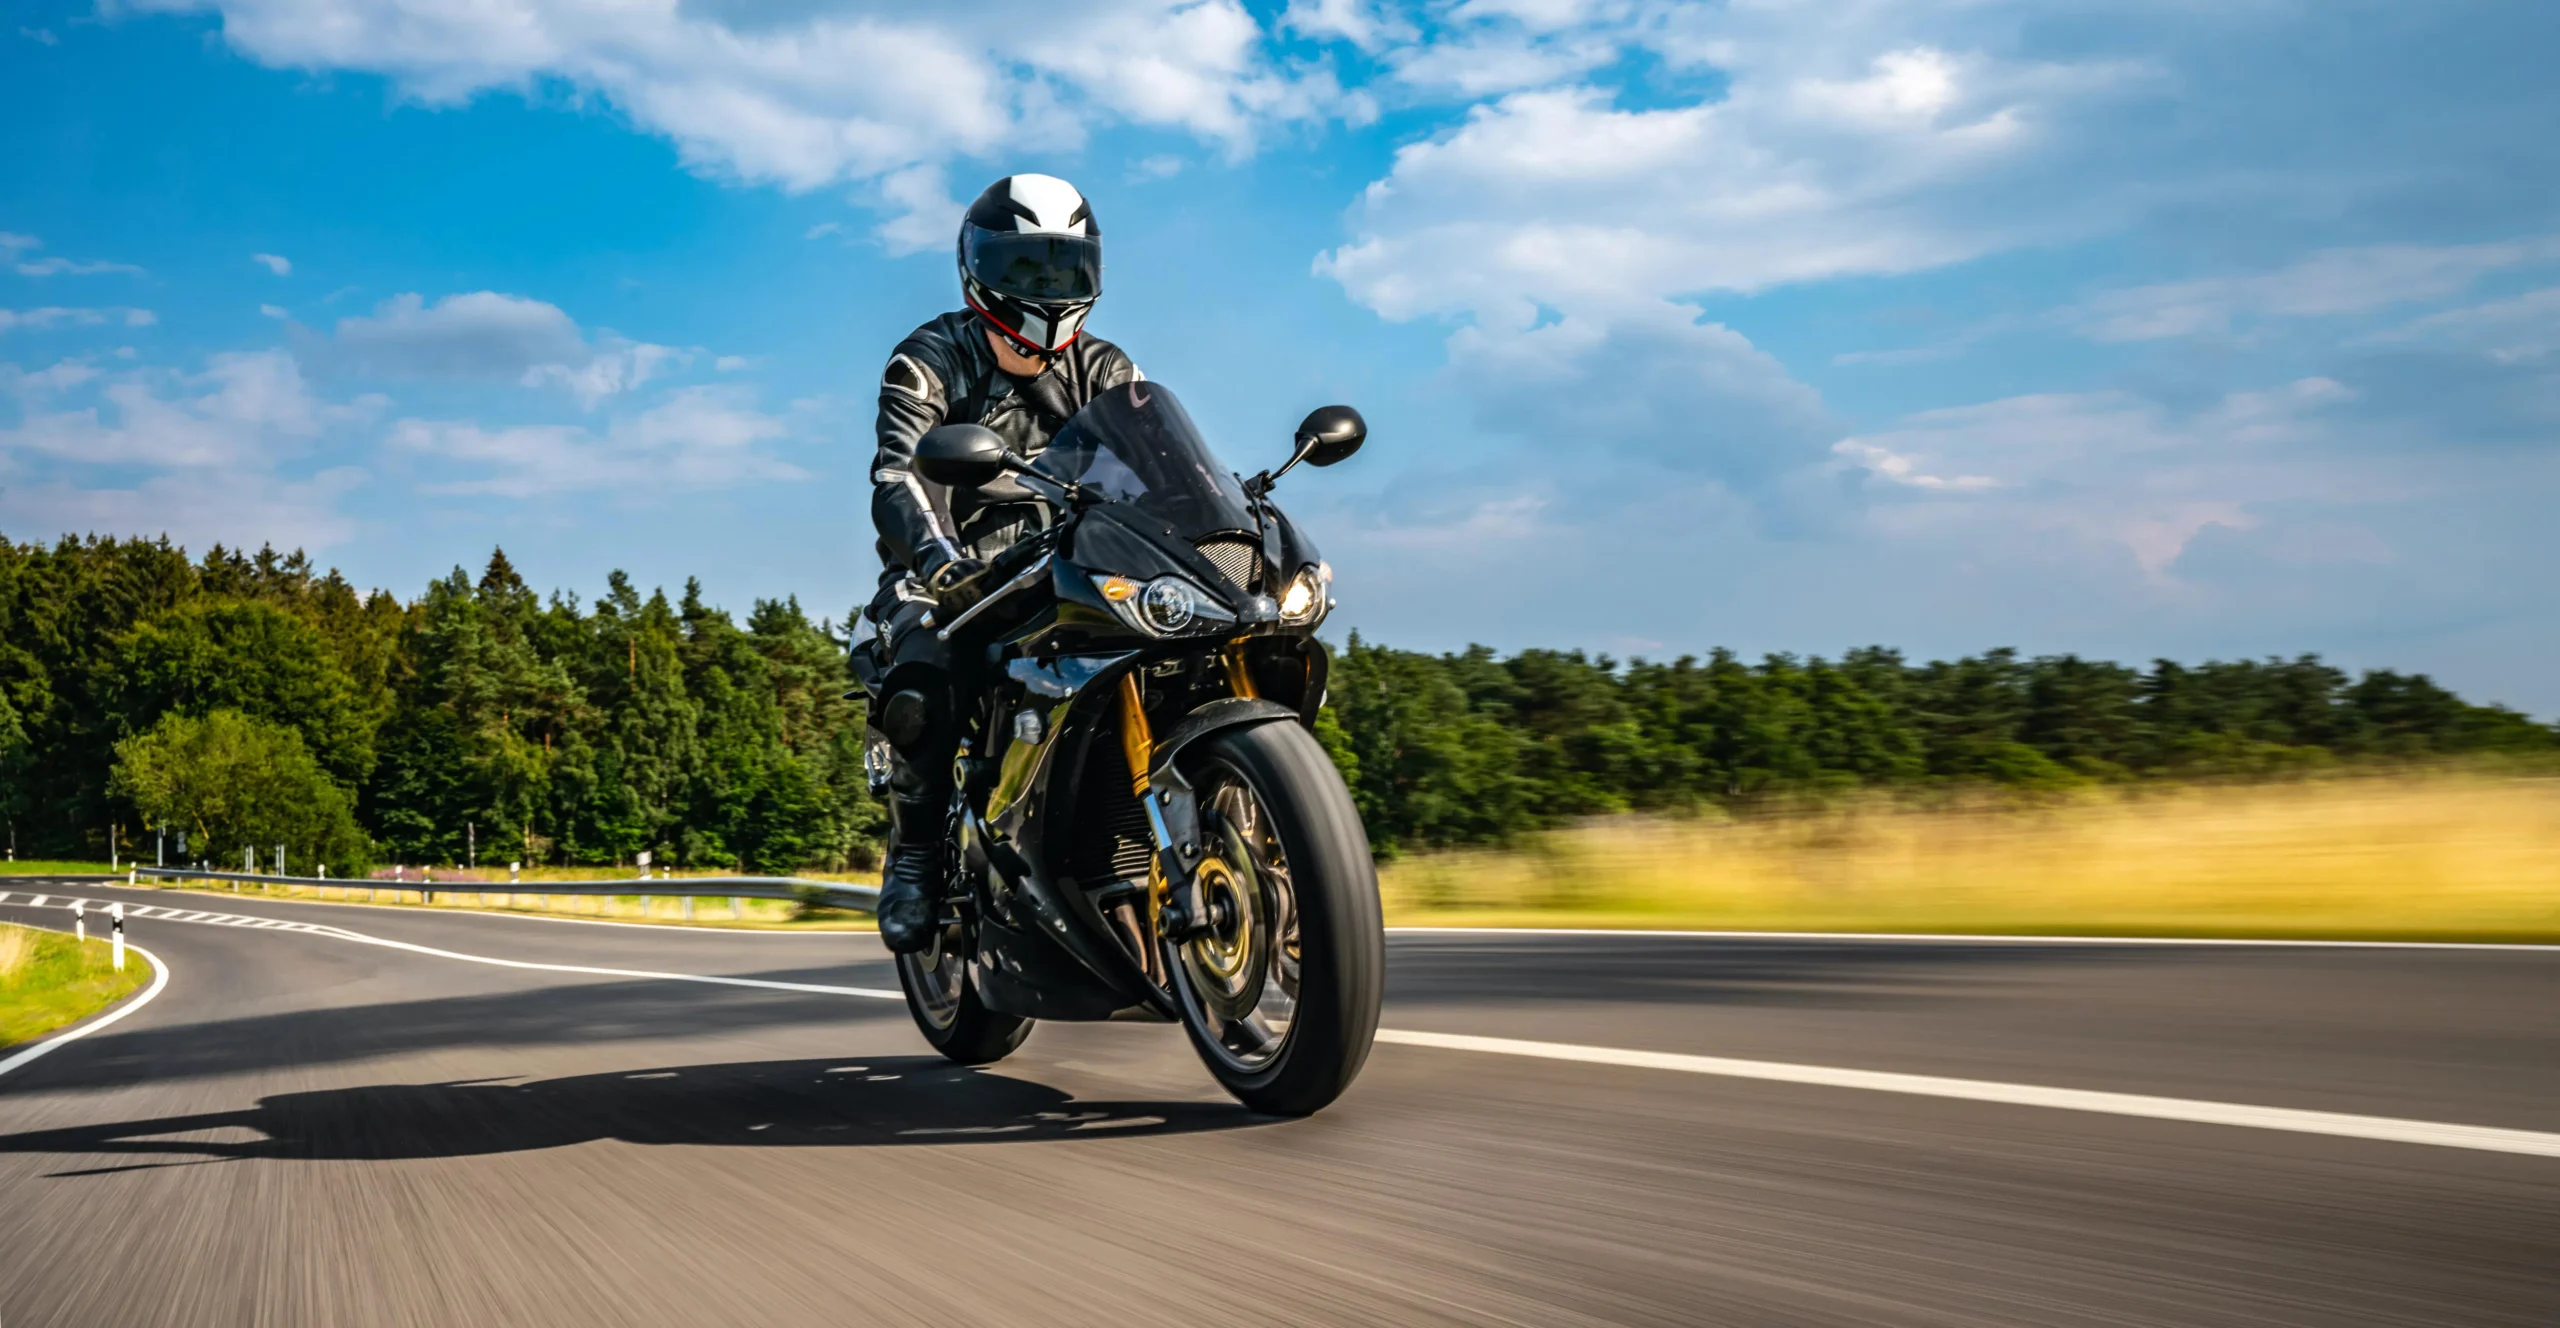 motos a toda velocidad en autopistas - Cuál es la velocidad máxima de una motocicleta